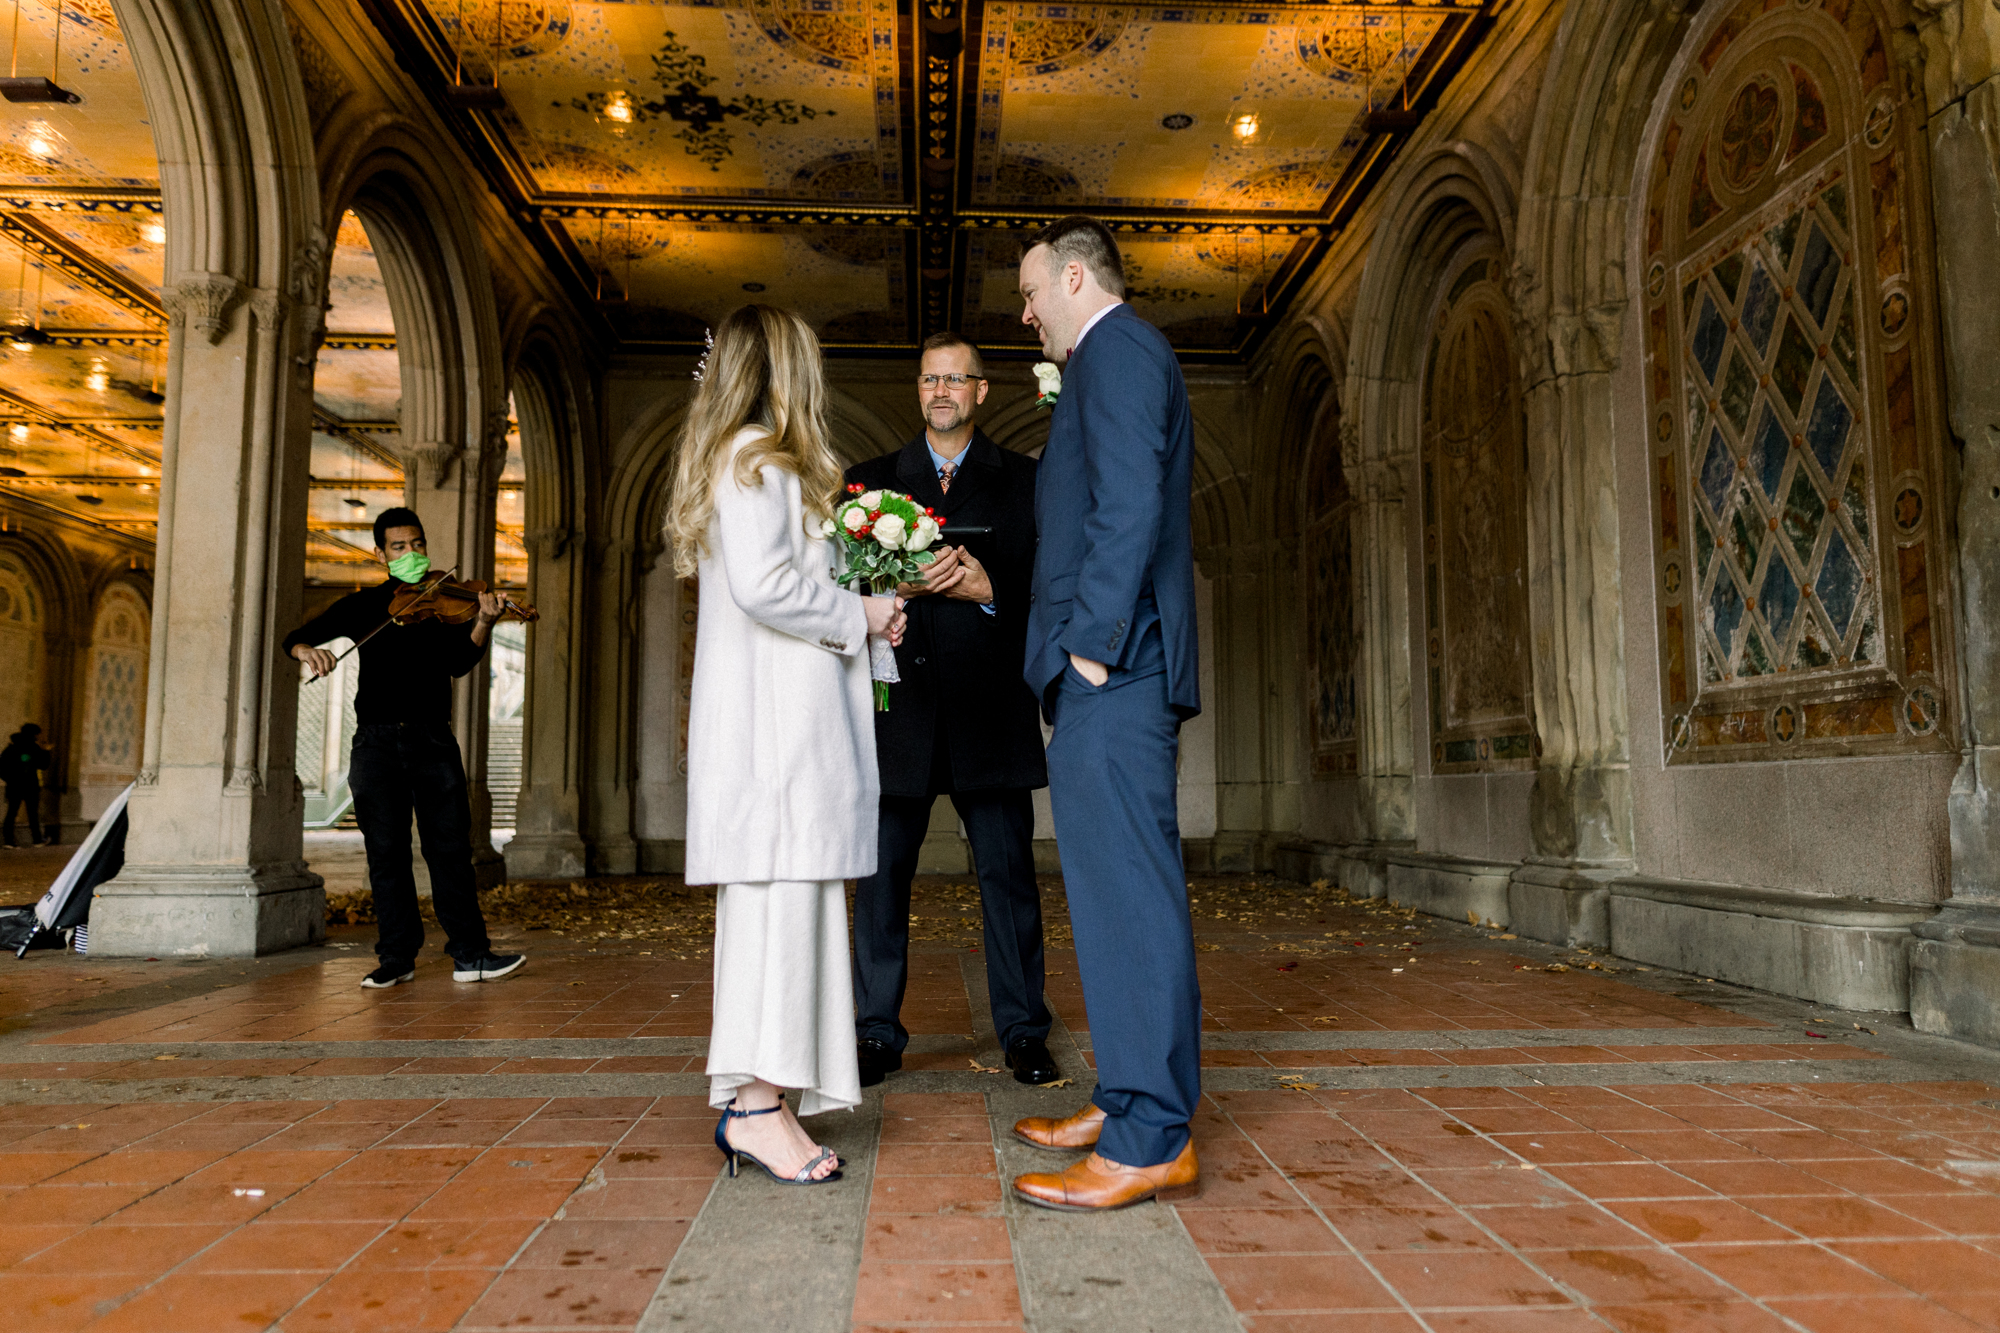 Bethesda Terrace wedding photos in Central Park